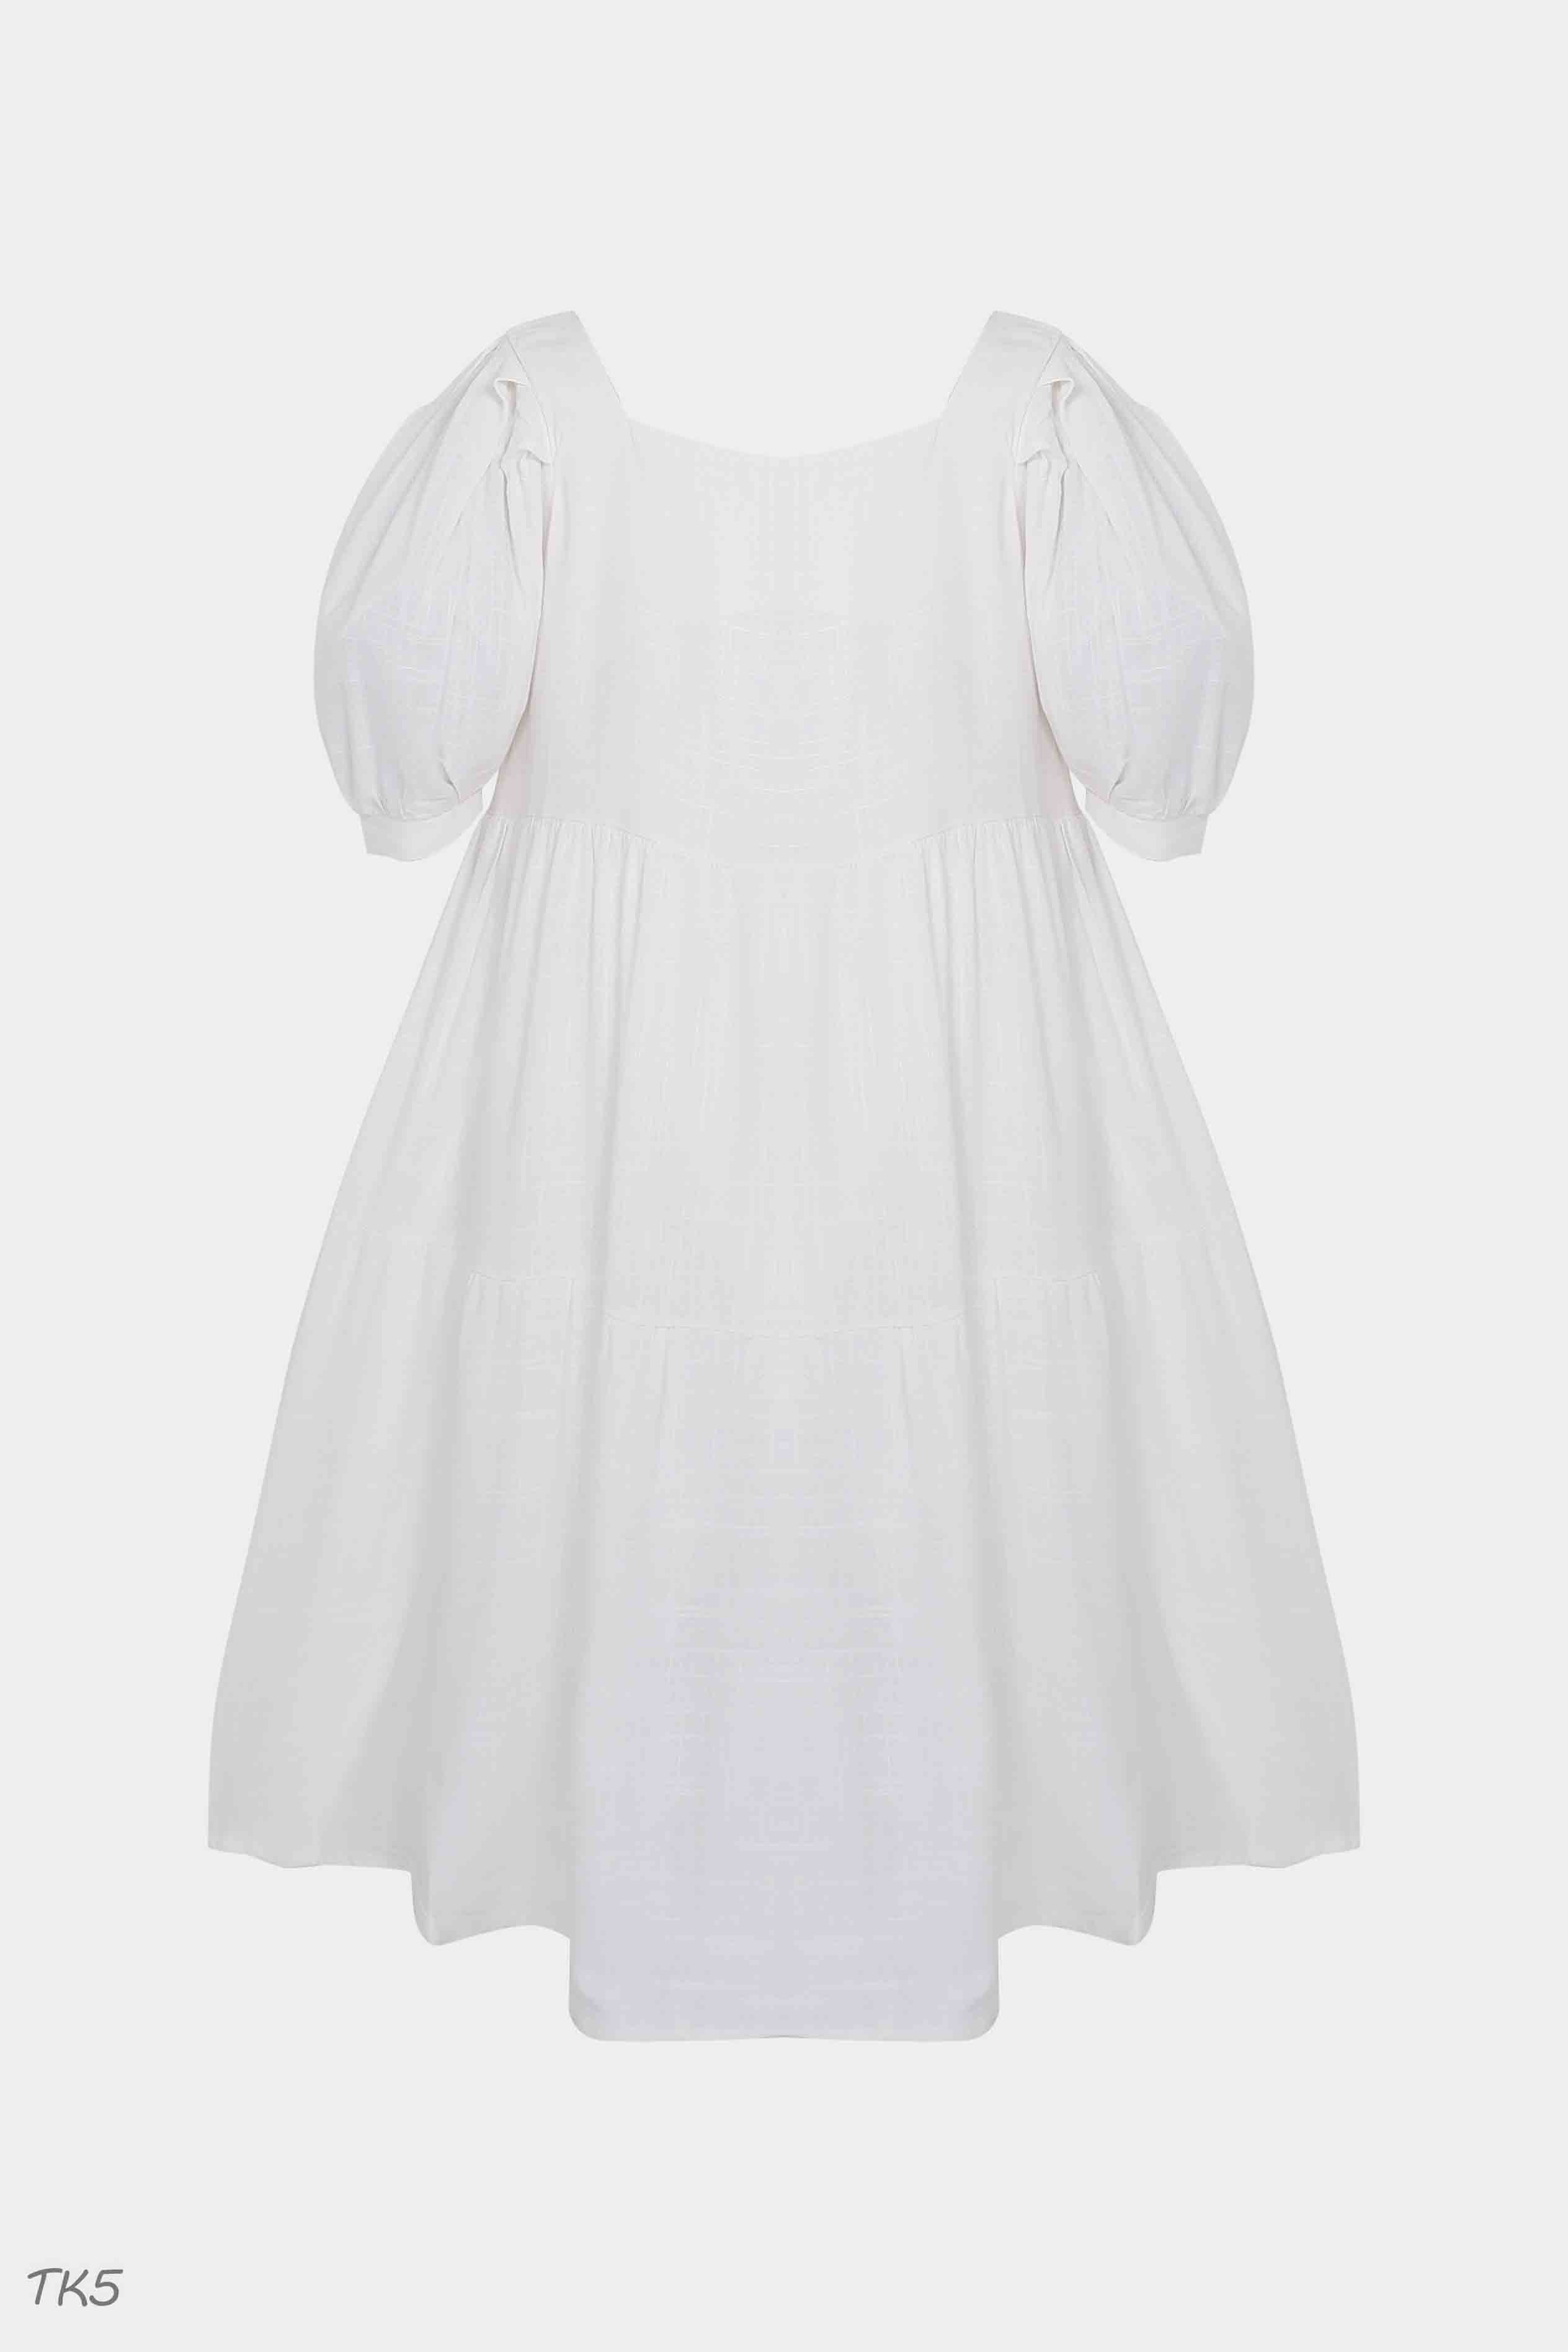 Váy Baby Doll Màu Trắng Nơ Cổ  Đầm Nữ Trắng tiểu Thư Mặc Sống Ảo Chụp Kỷ  Yếu  Giống hình 100 giá rẻ nhất tháng 42023